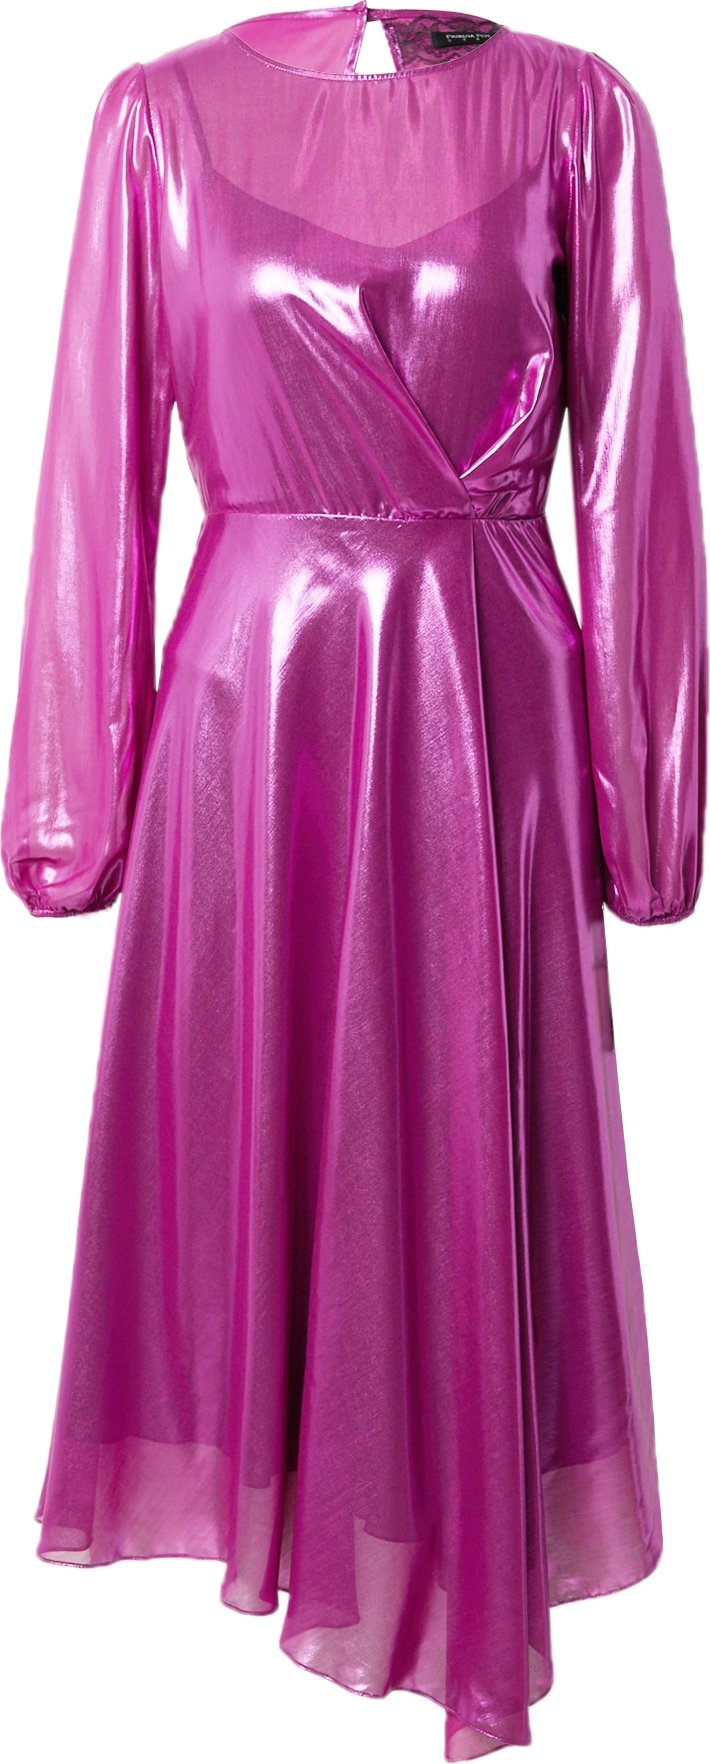 PATRIZIA PEPE Koktejlové šaty fialová